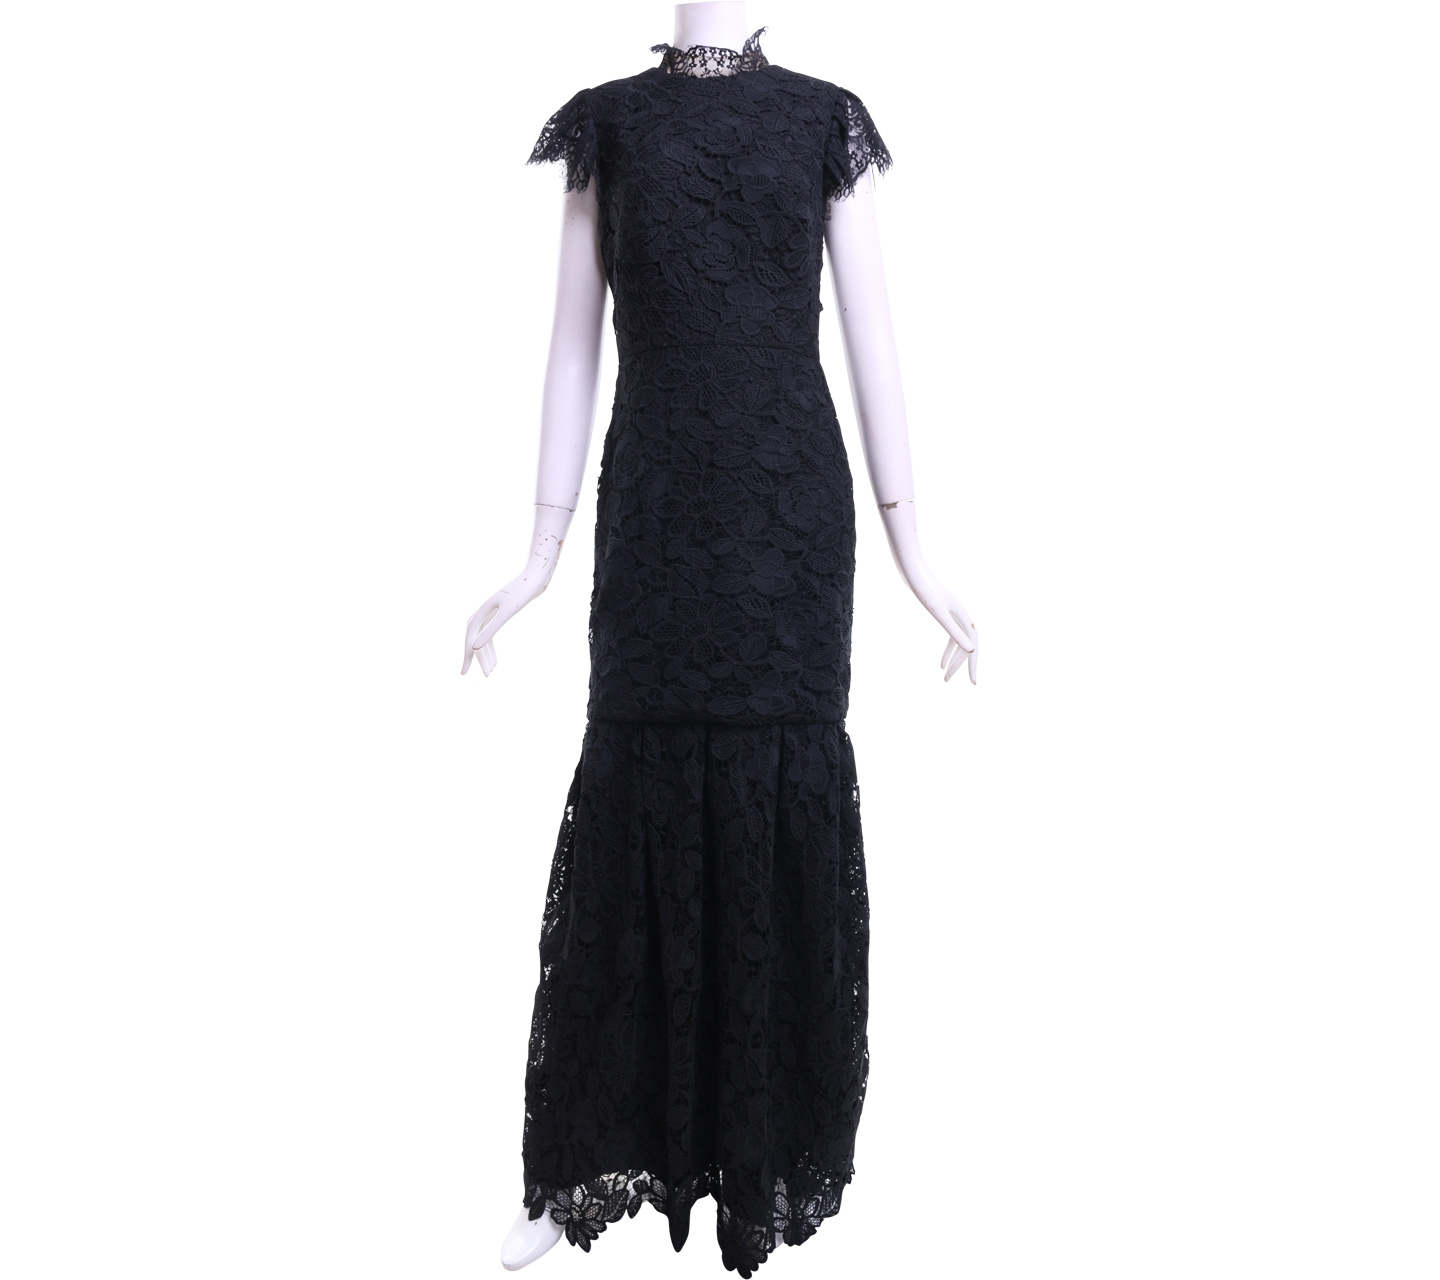 Monique Ihuillier Black Lace Long Dress